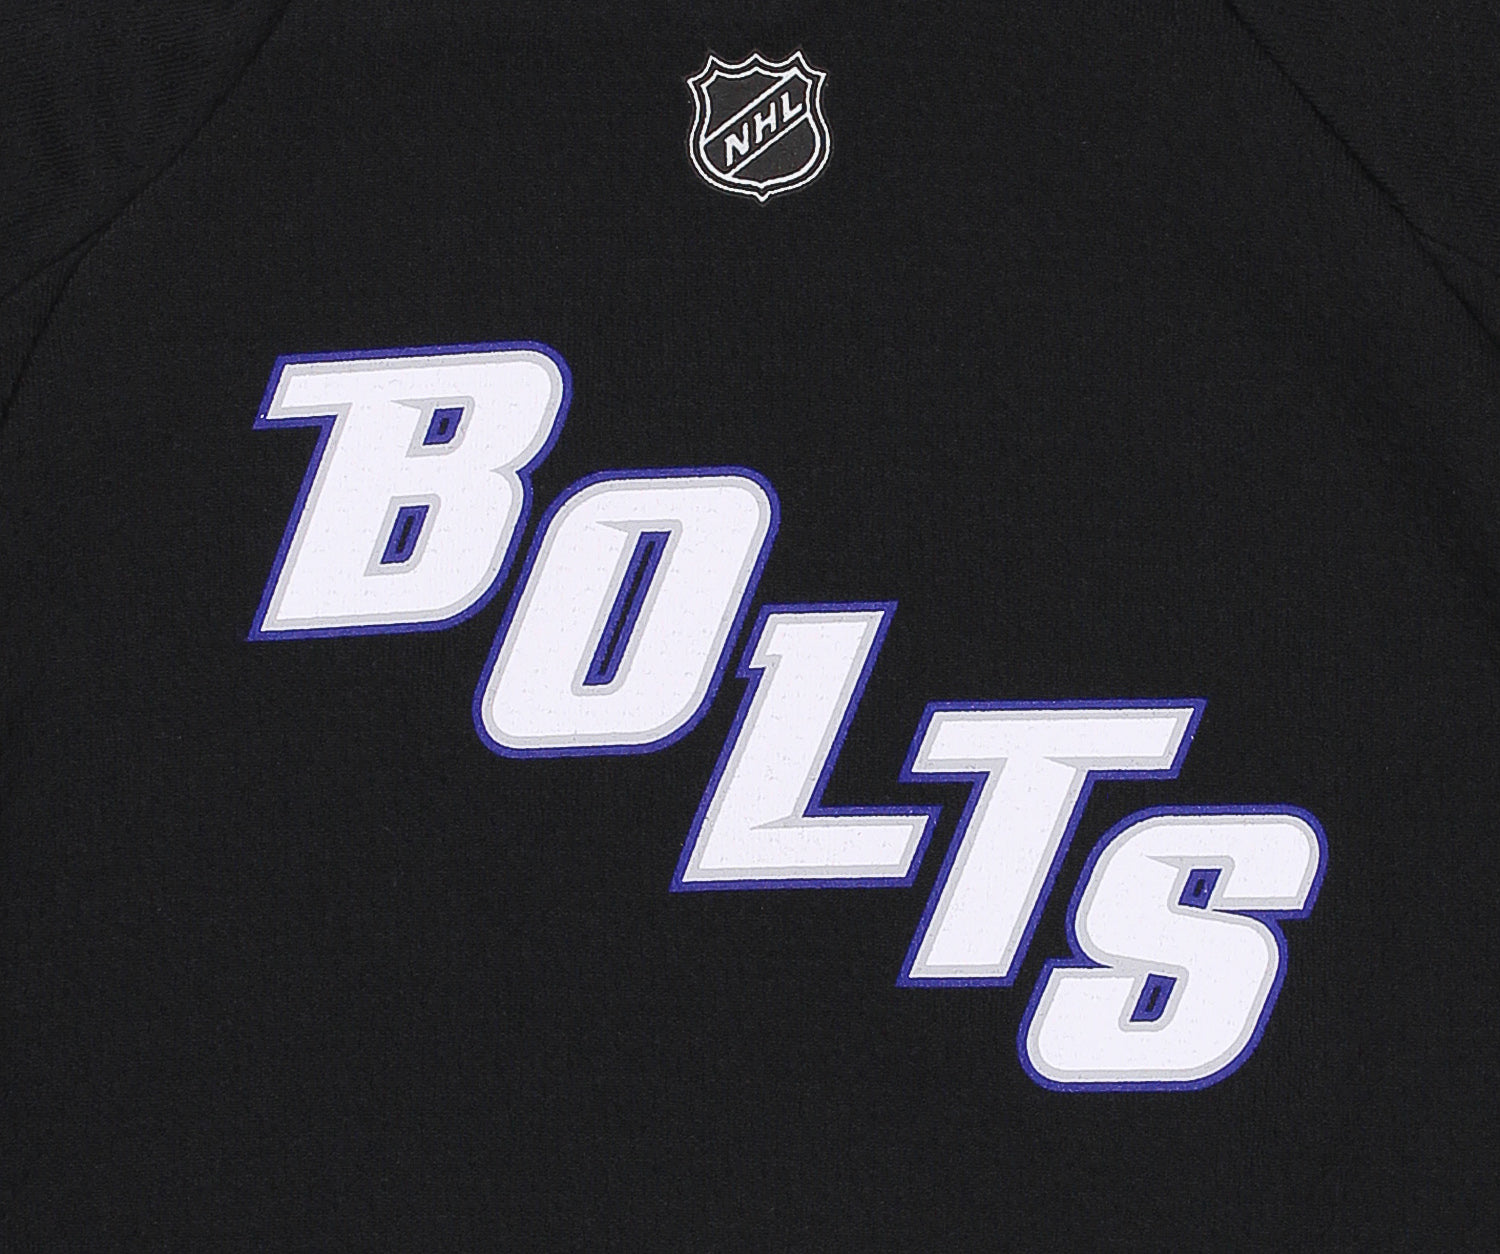 Tampa Bay Lightning BOLTS Alternate Reebok NHL Hockey Jersey Size Large